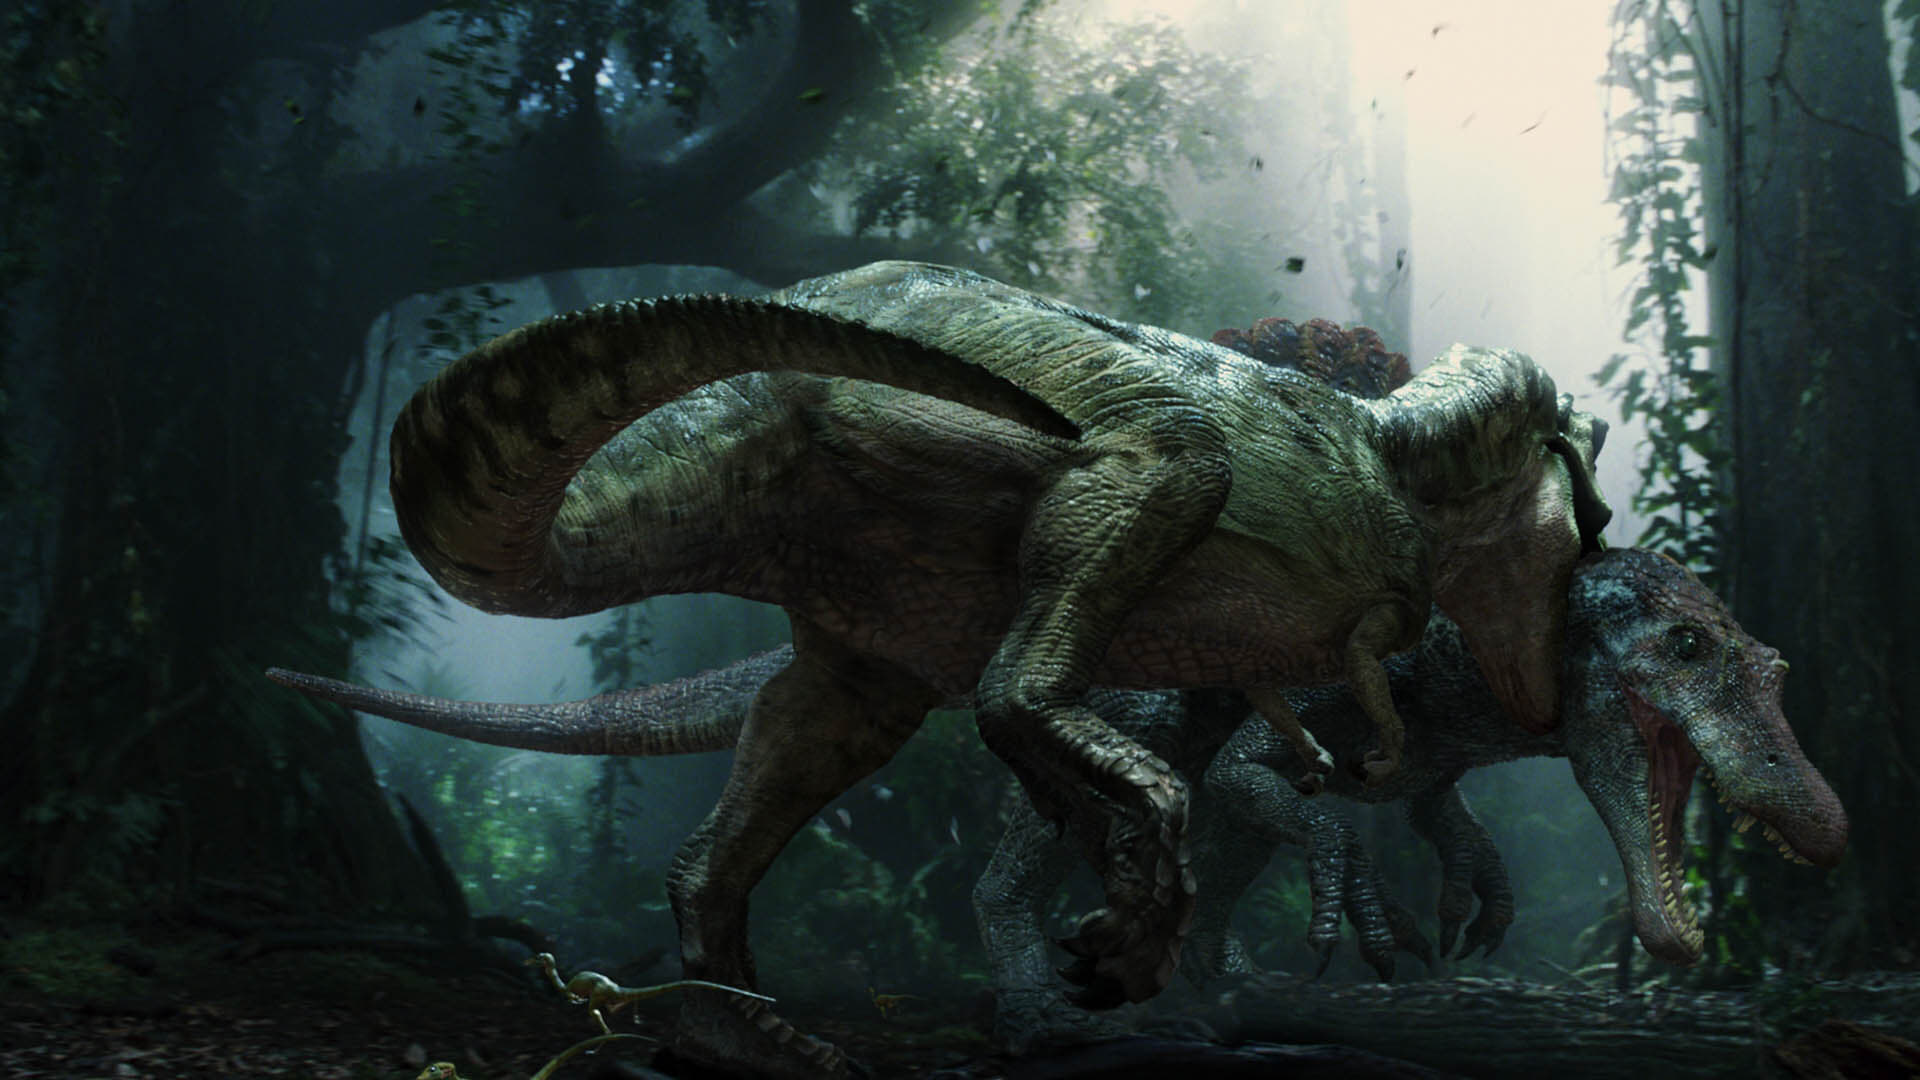 Xem Phim Công viên kỷ Jura 3 (Jurassic Park III)